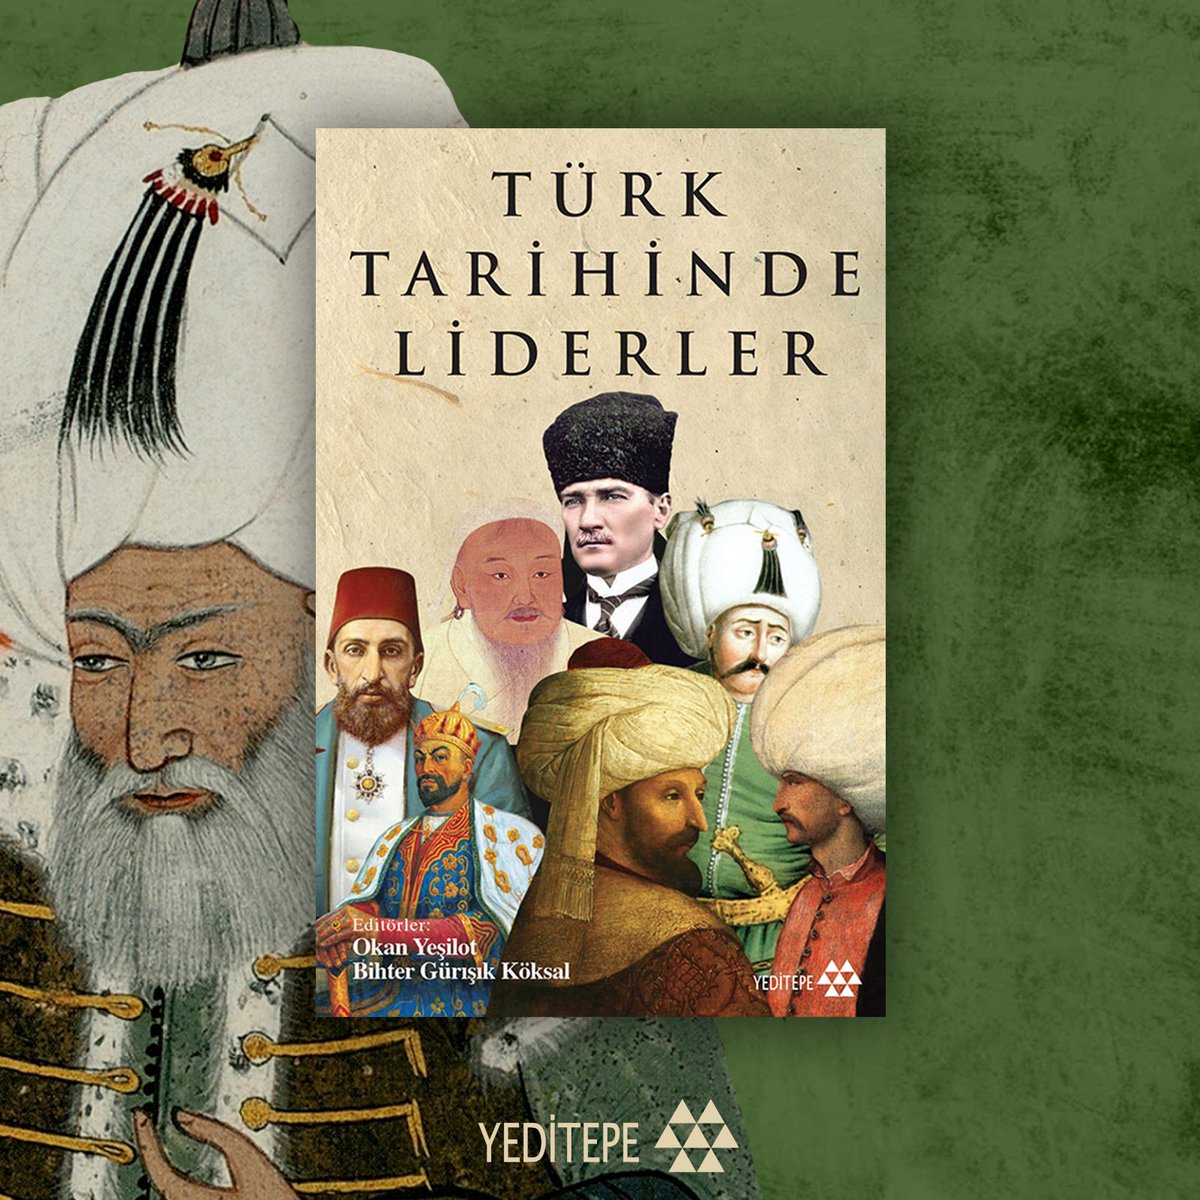 #BiliyorMusun Sultan II. Bayezid tahttan indirilen ilk Osmanlı padişahıdır.